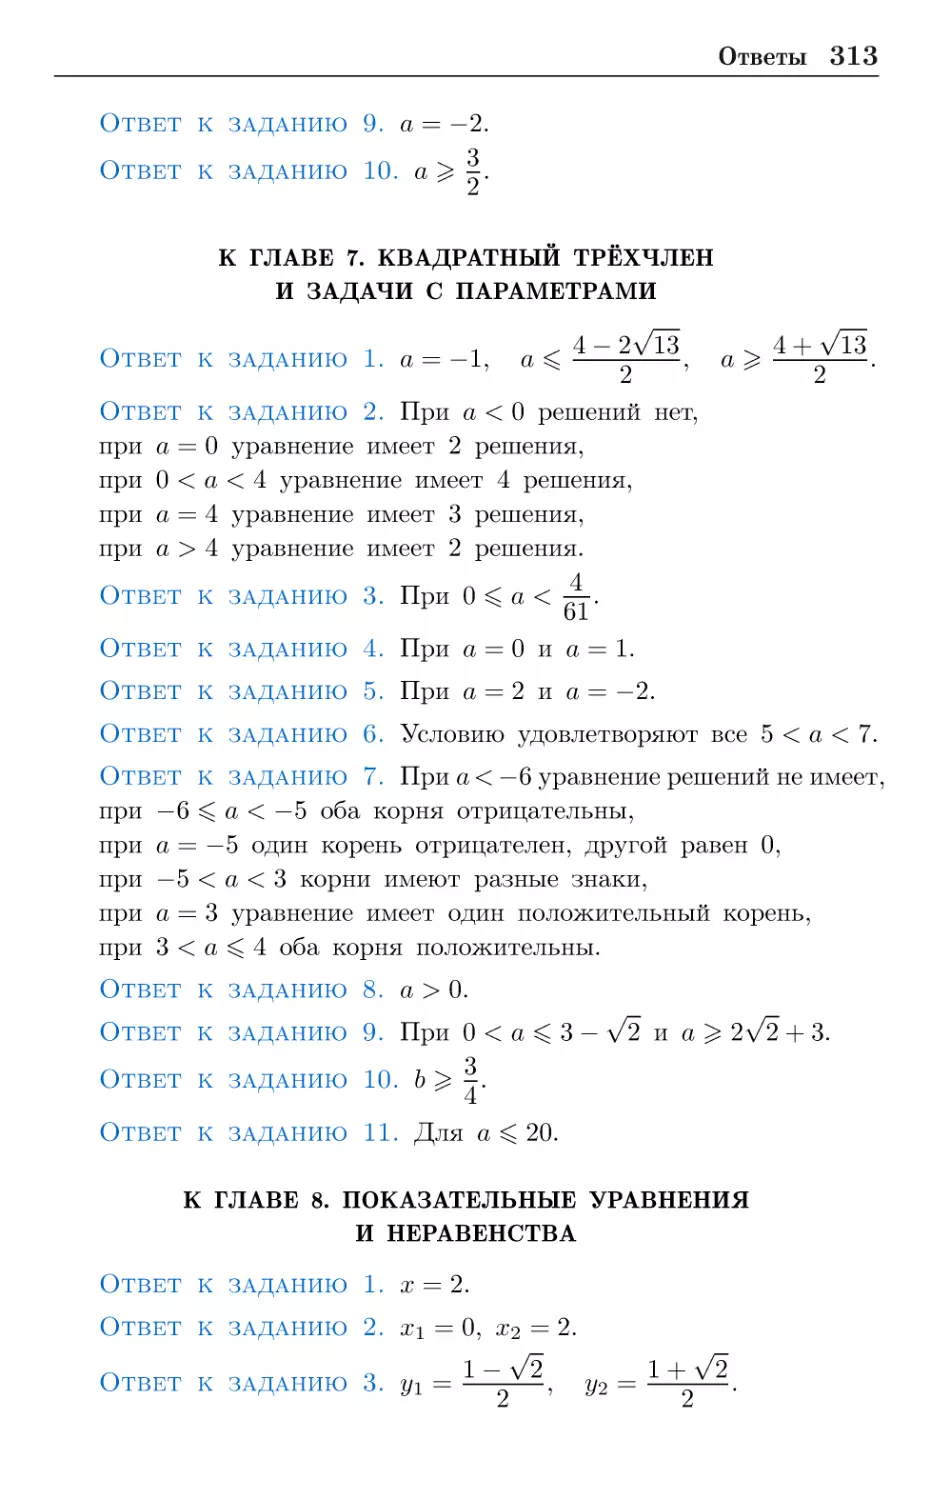 К главе 7. Квадратный трёхчлен и задачи с параметрами
К главе 8. Показательные уравнения и неравенства